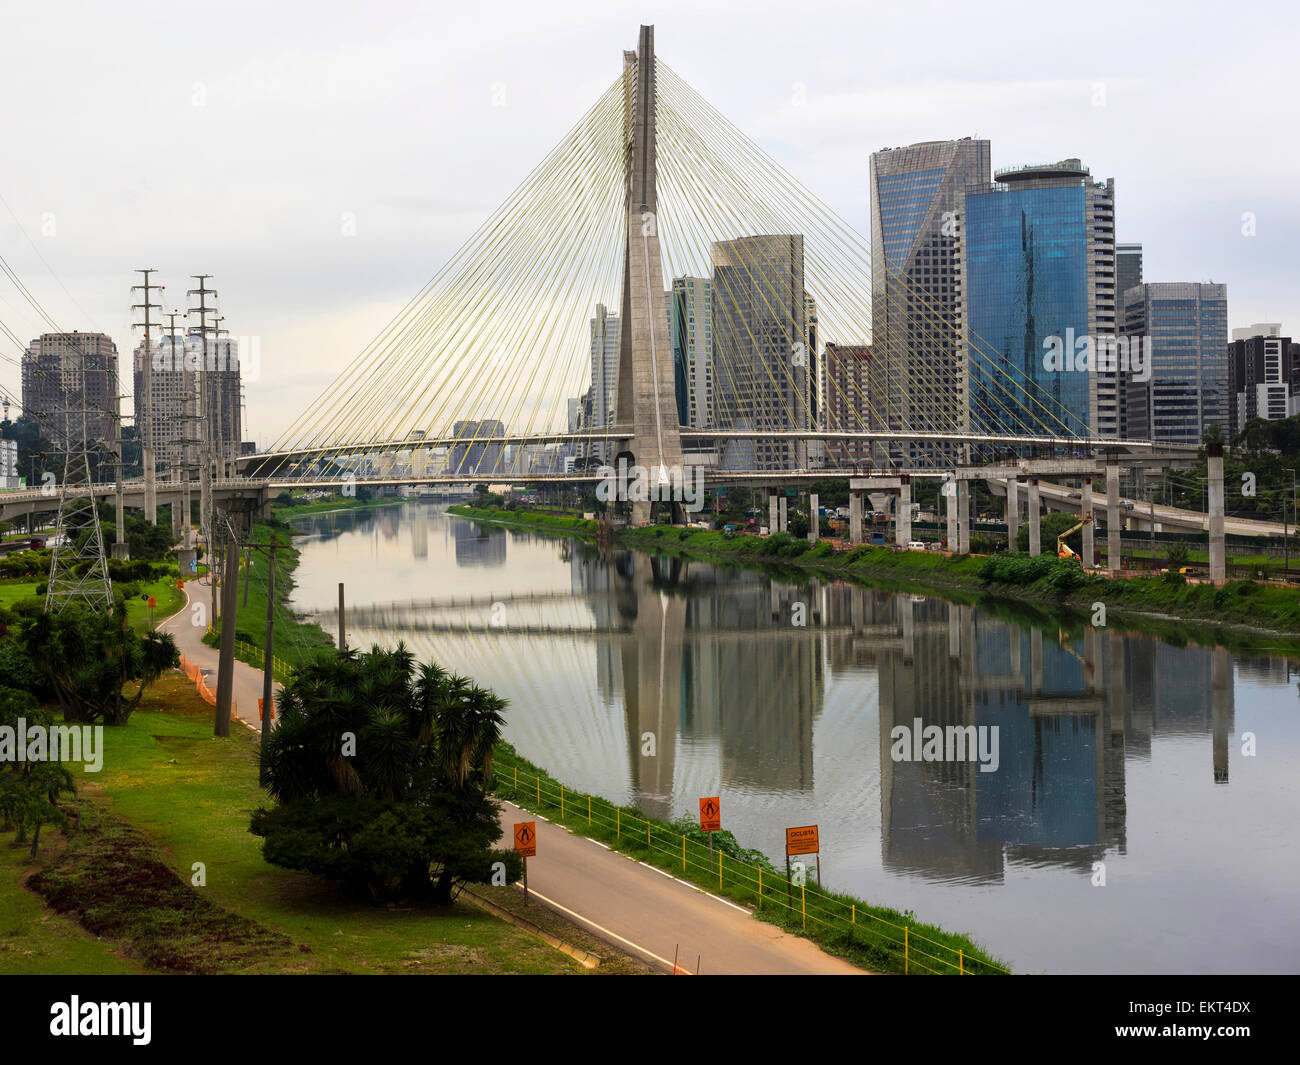 L'Octavio Frias de Oliveira pont suspendu à haubans, aka Ponte Estaiada, à Sao Paulo, Brésil. Banque D'Images